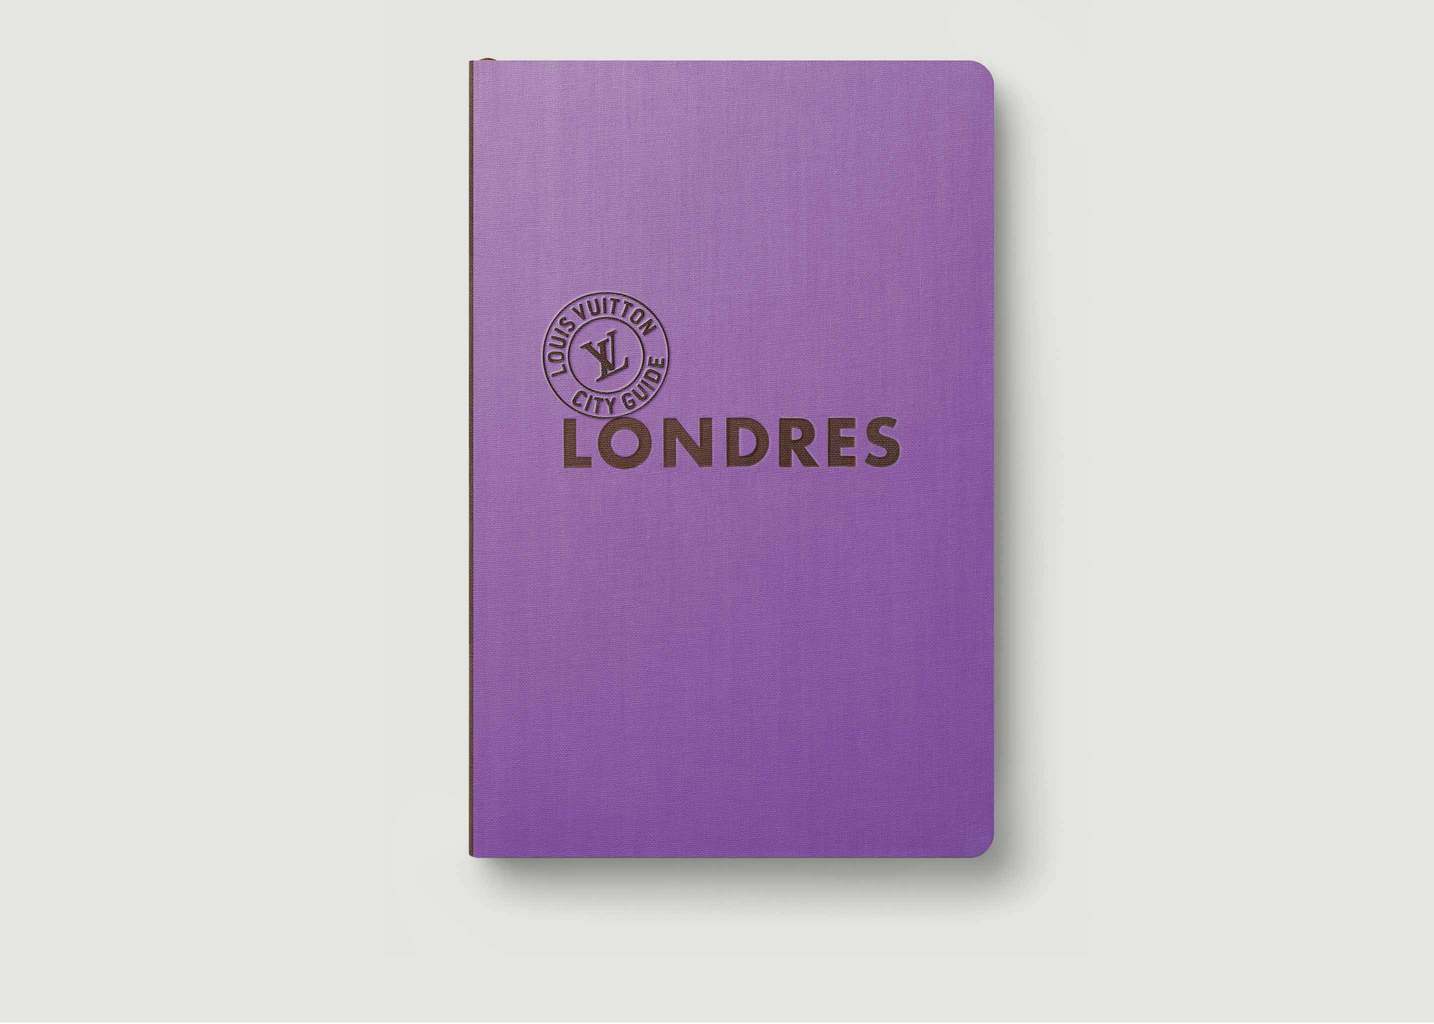 Louis Vuitton Travel Book Londres